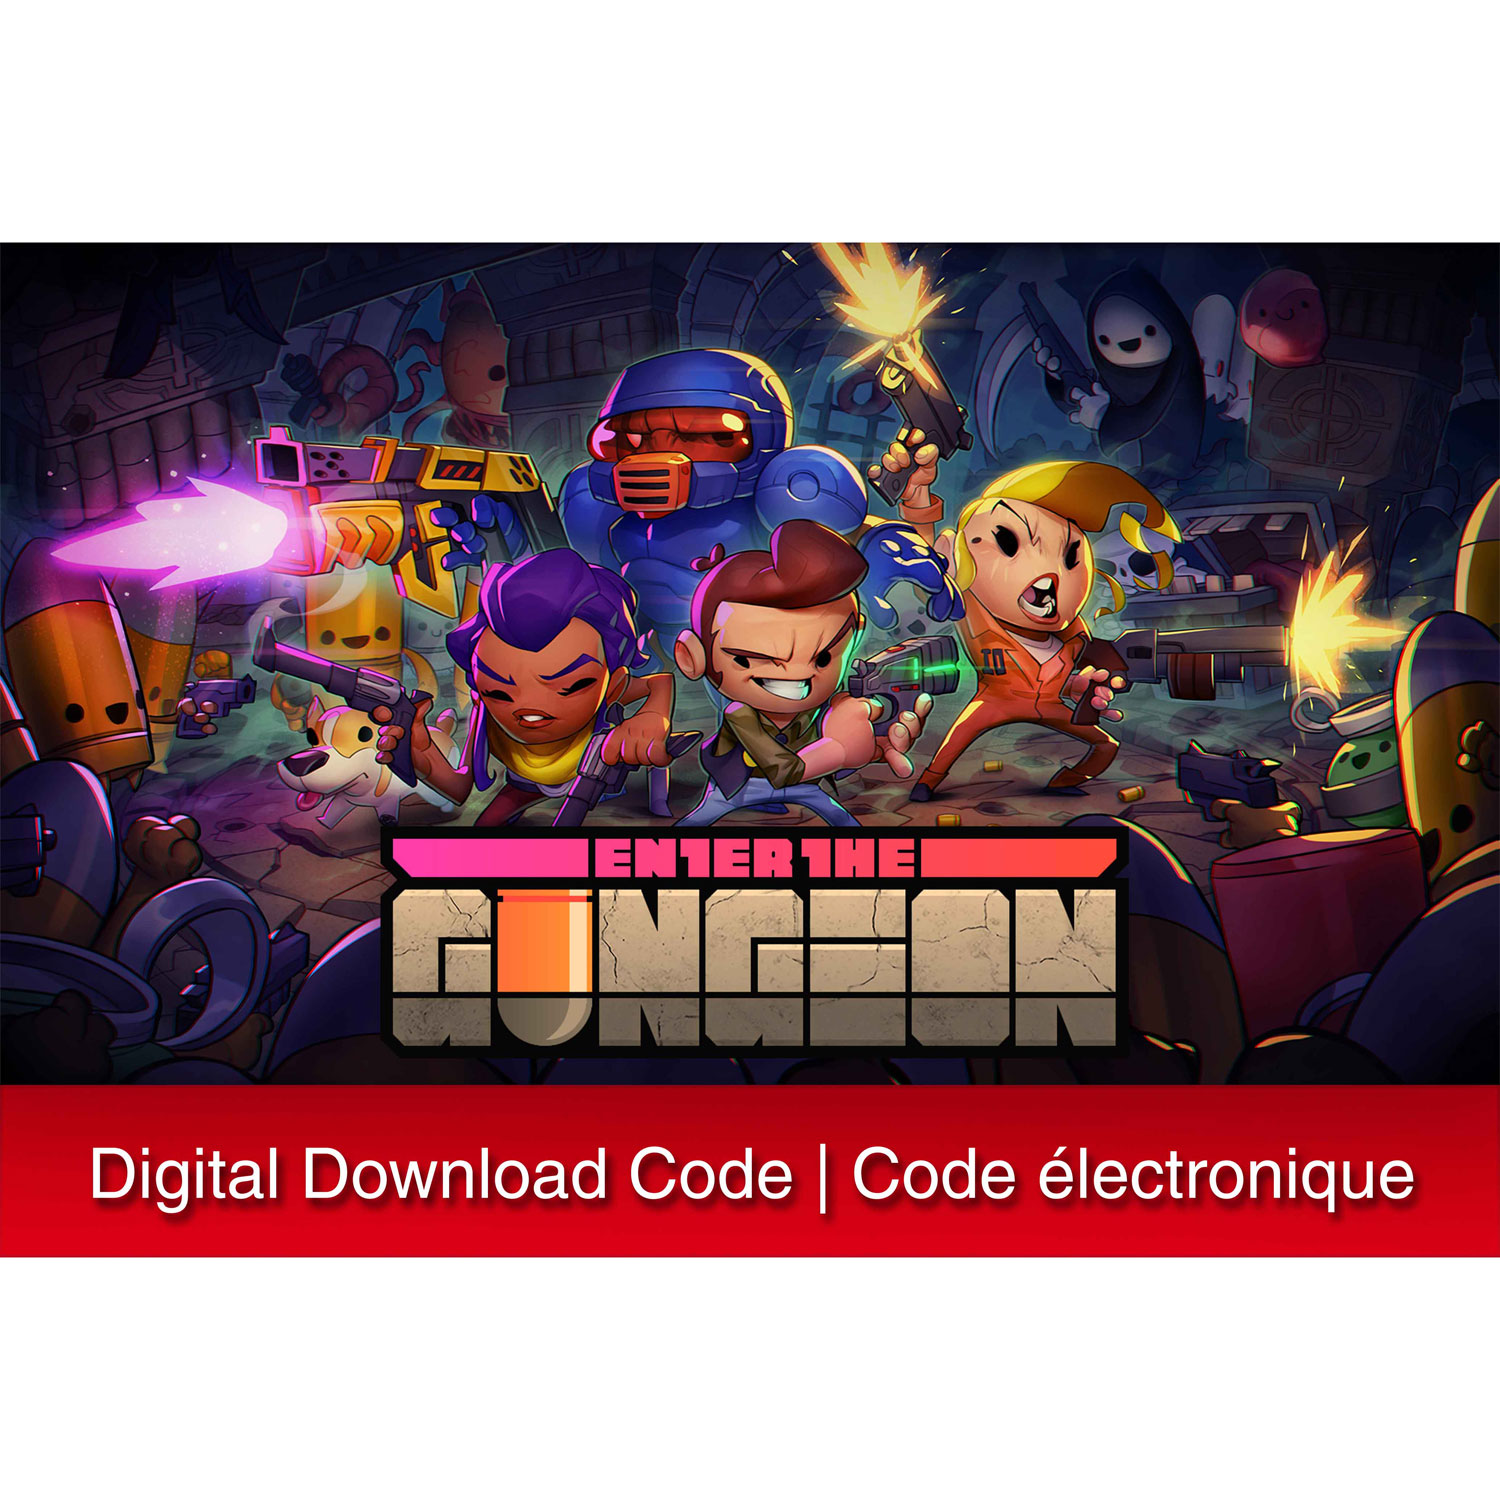 Enter the Gungeon (Switch) - Digital Download